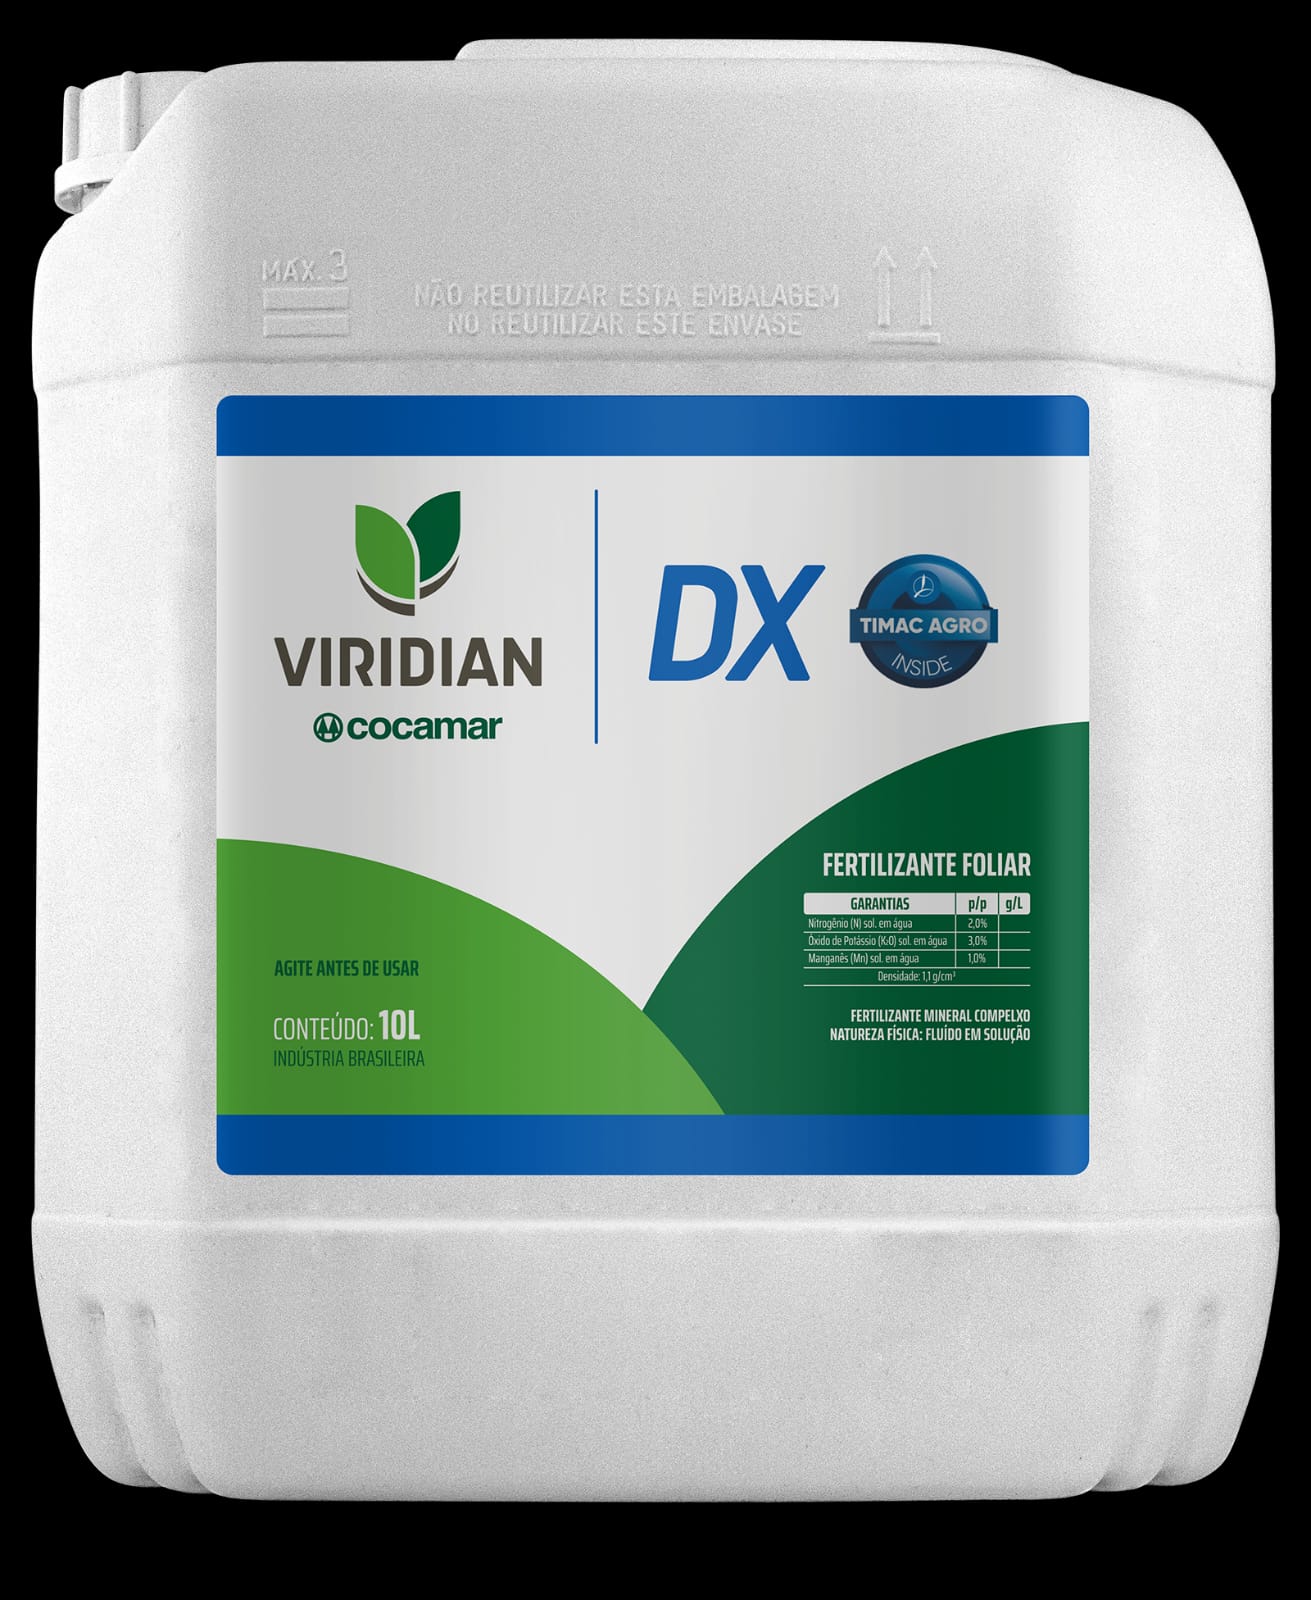 AGRO: Cocamar lança o Viridian DX, nova ferramenta para impulsionar a produtividade 